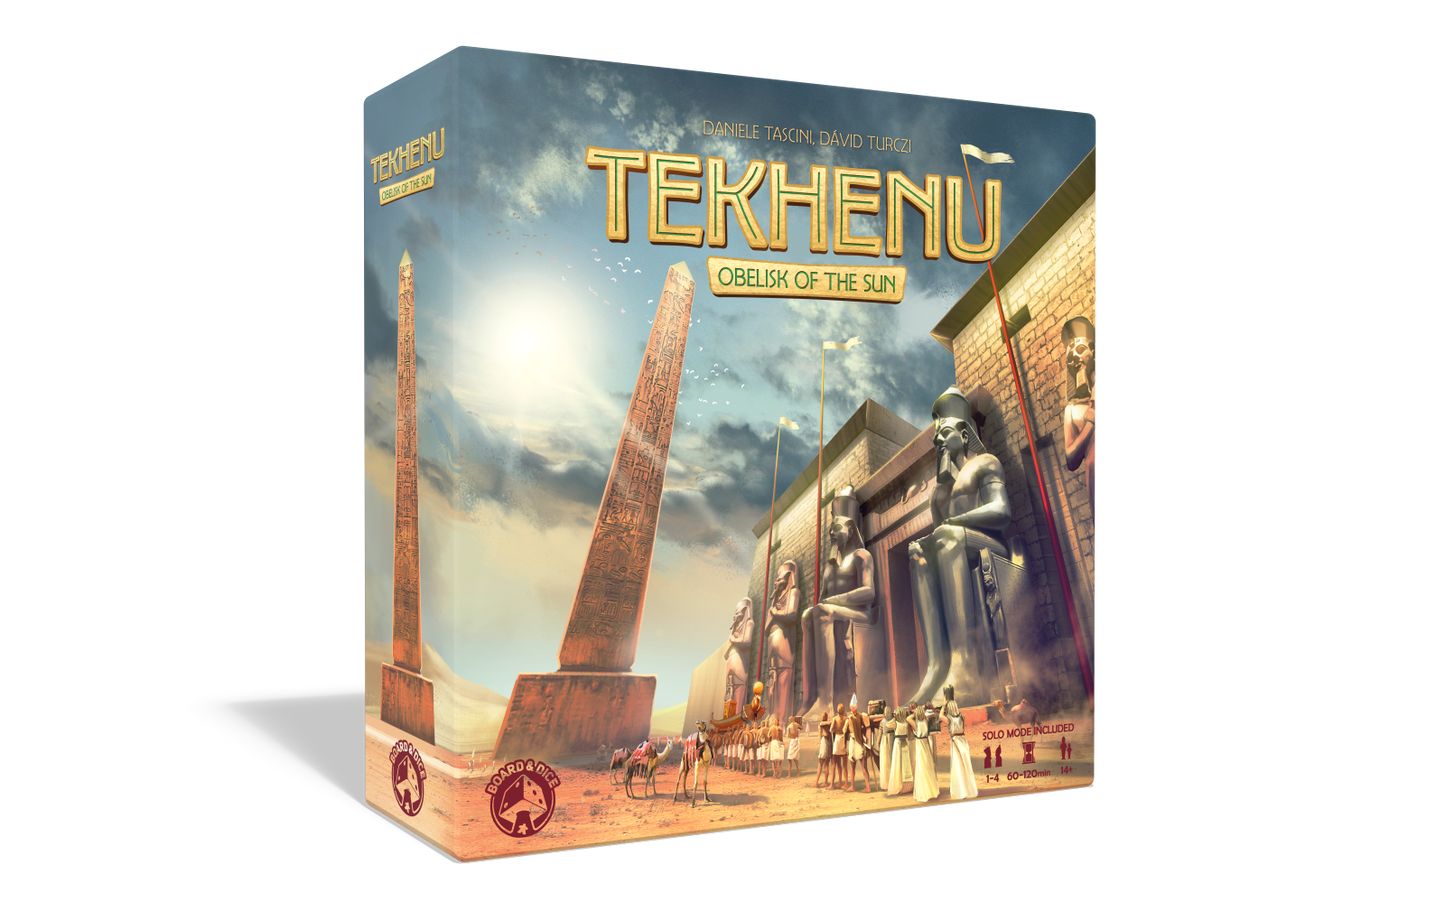 Tekhenu Obelisk of the Sun